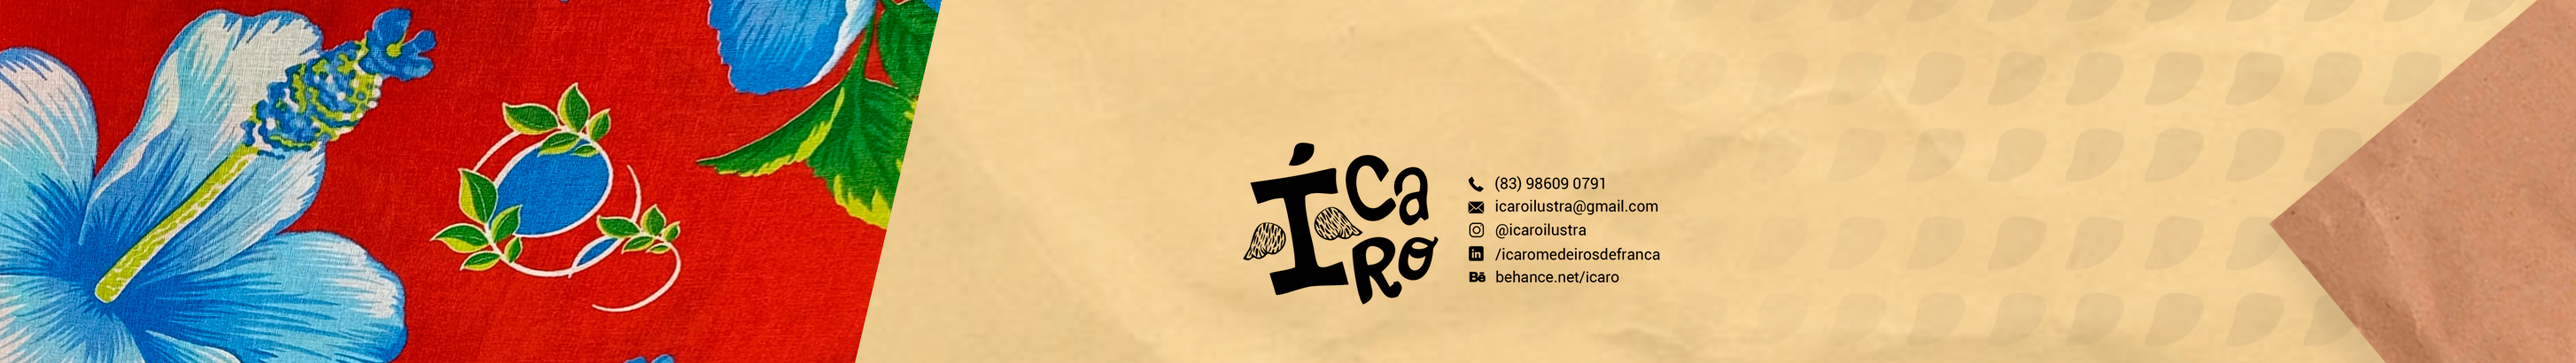 Ícaro Medeiros's profile banner